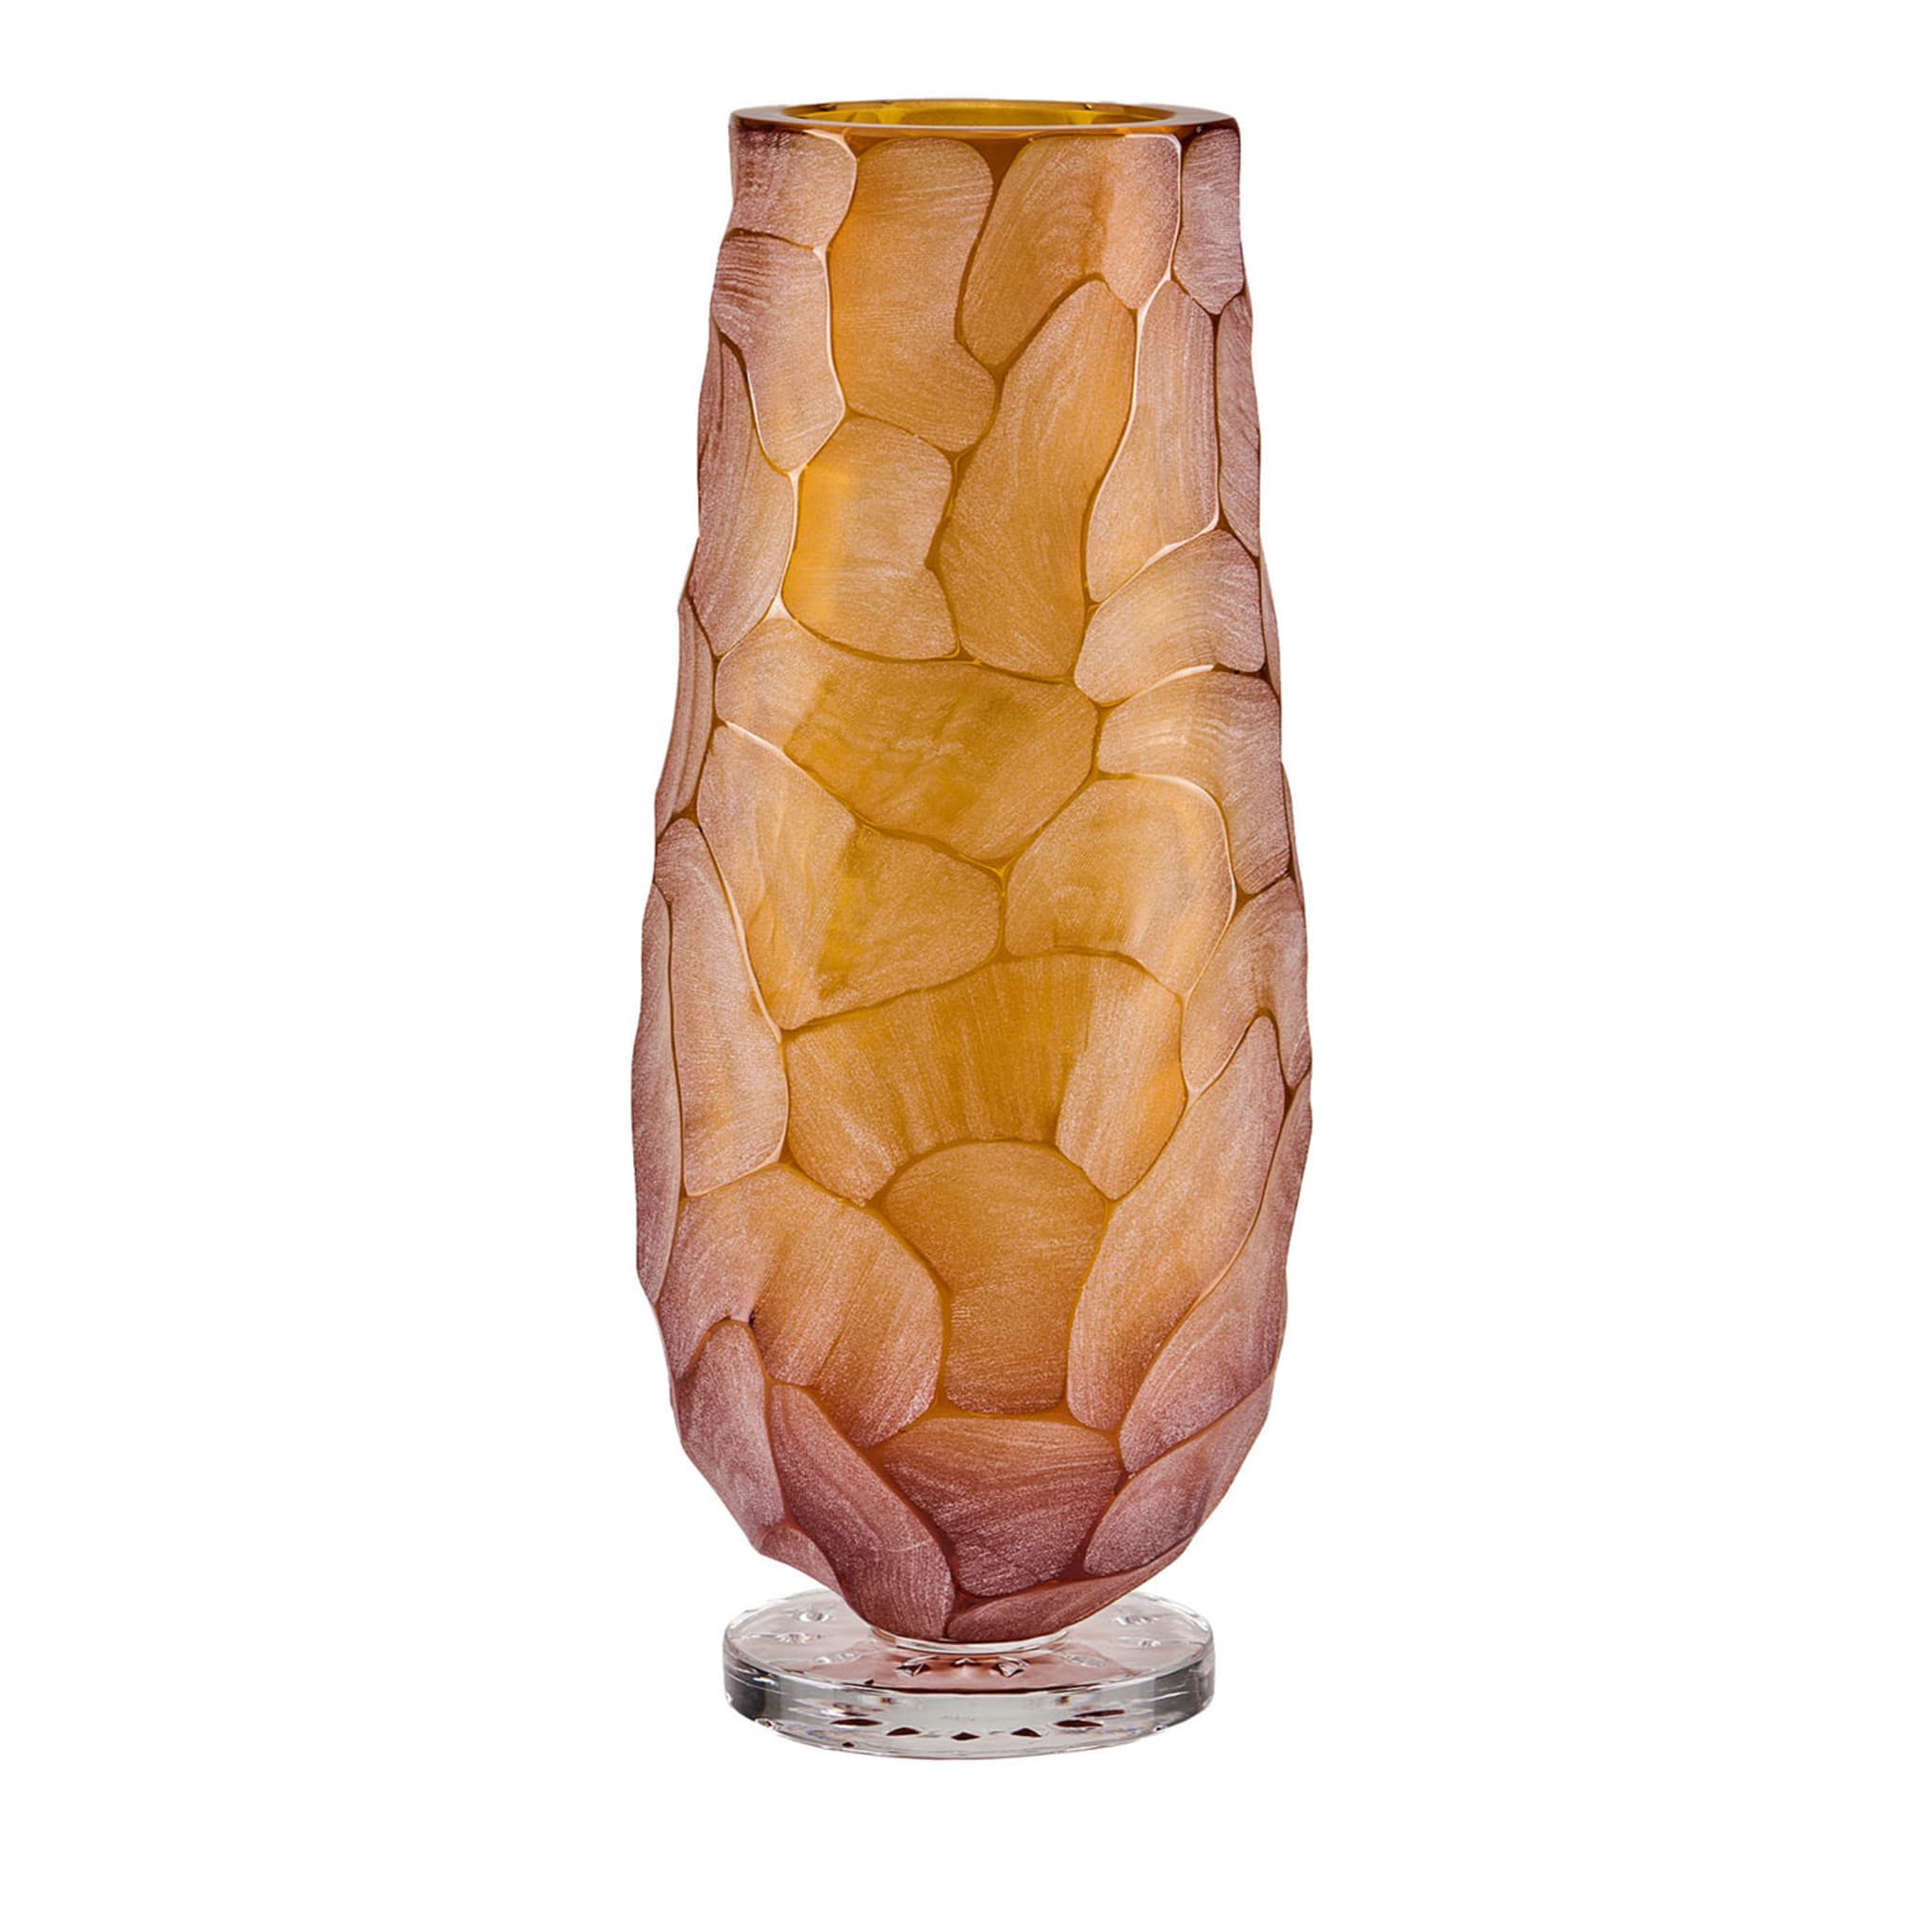 Grand vase Sagamore - Vue principale